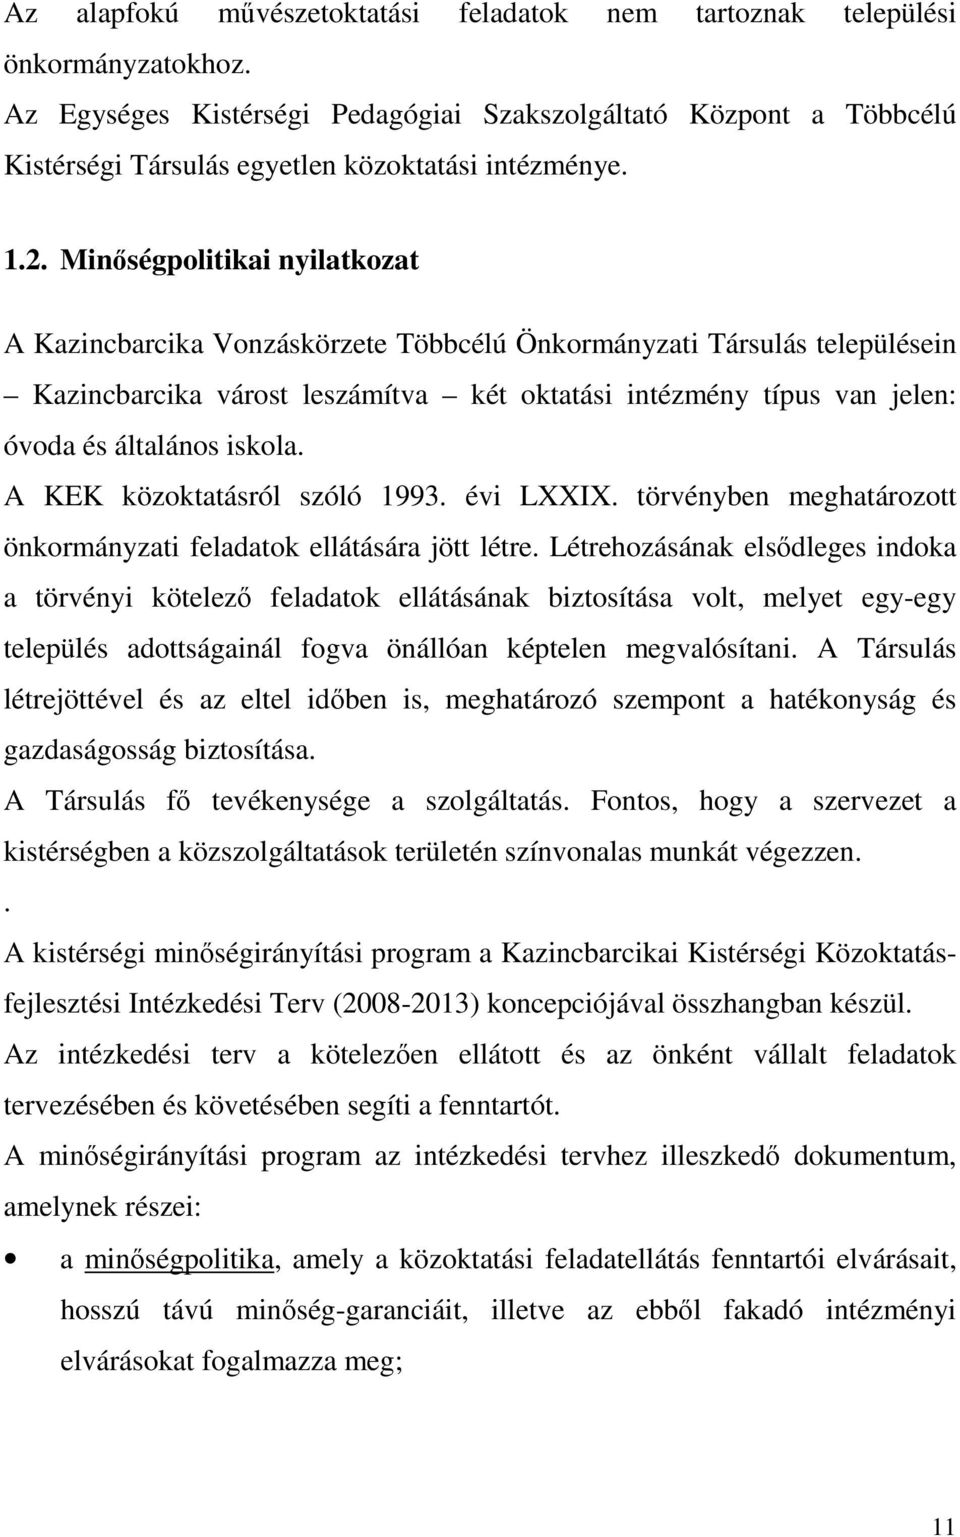 Minőségpolitikai nyilatkozat A Kazincbarcika Vonzáskörzete Többcélú Önkormányzati Társulás településein Kazincbarcika várost leszámítva két oktatási intézmény típus van jelen: óvoda és általános